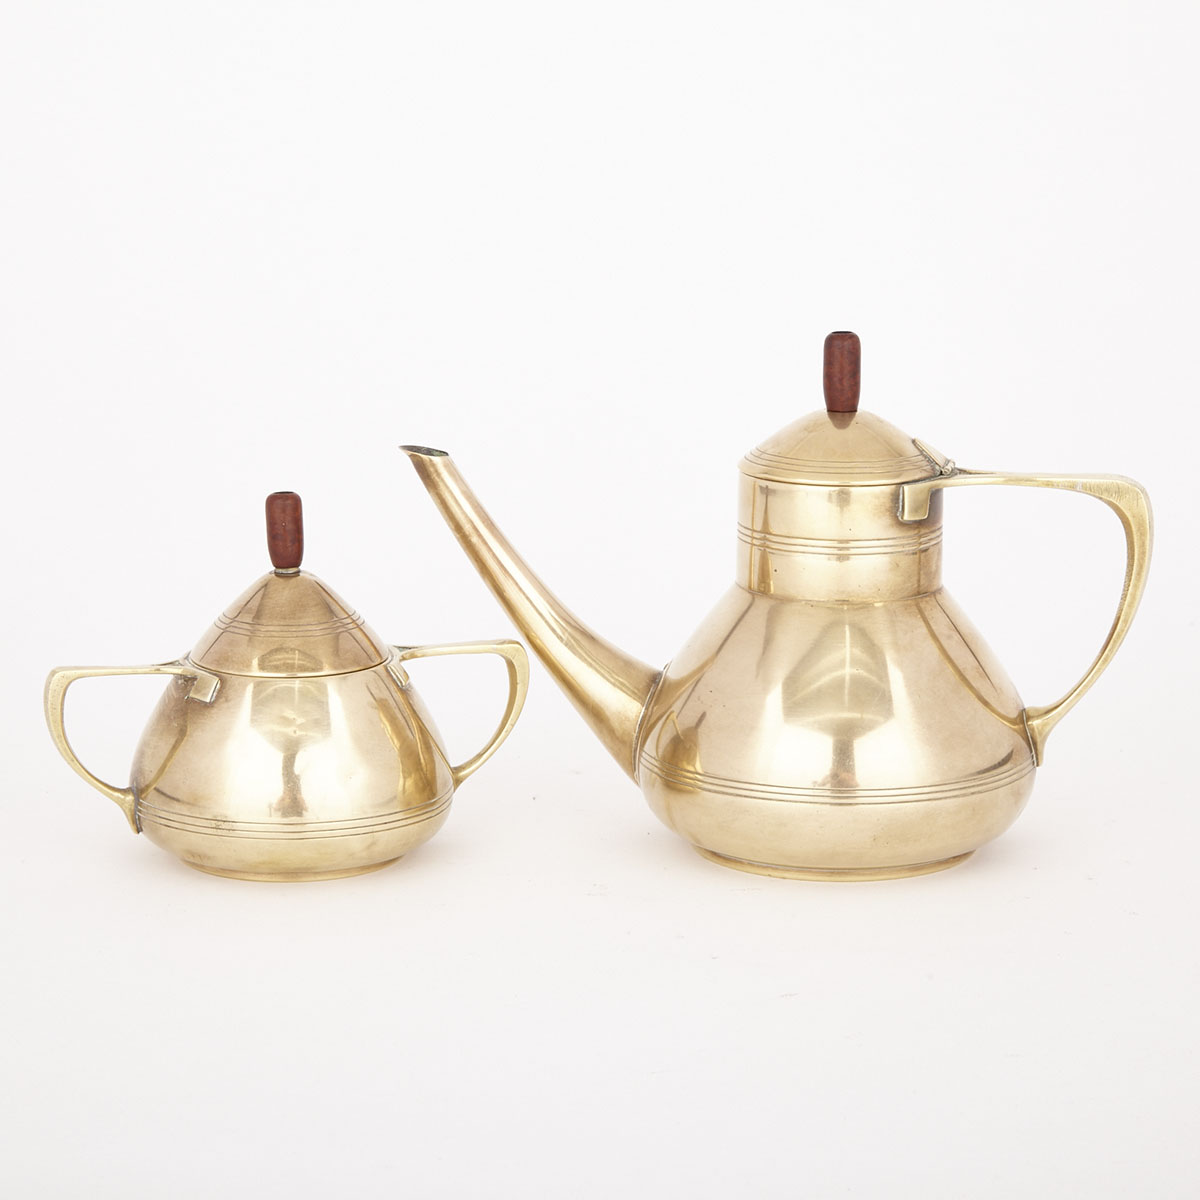 WMF Jungendstil Spun Brass Tea Pot and Covered Sugar Bowl, Württembergische Metallwarenfabrik , early 20th century